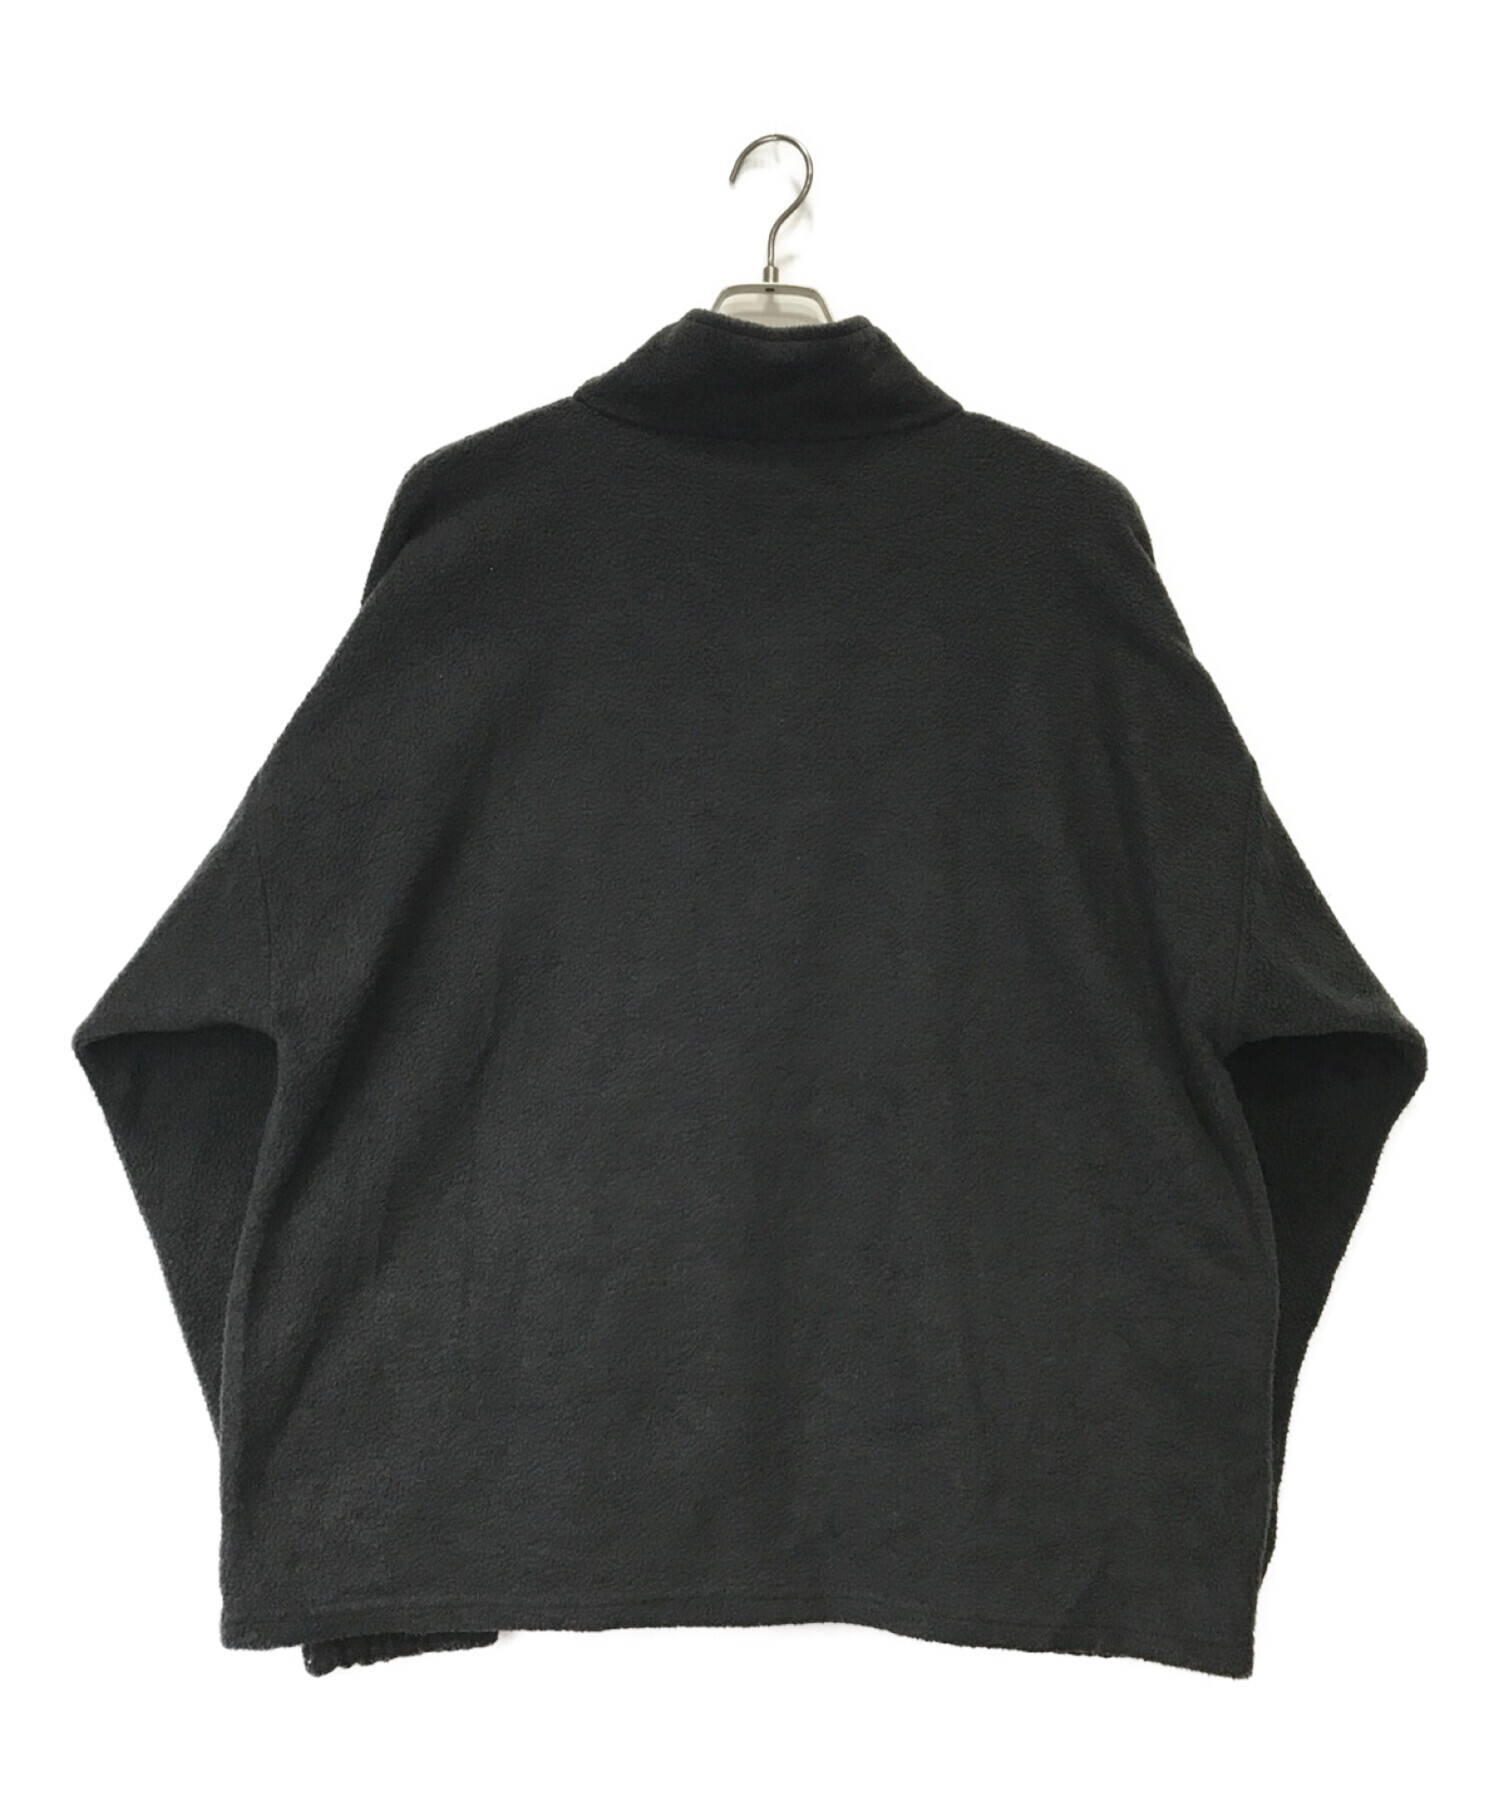 ENNOY (エンノイ) フリースジャケット ブラック サイズ:XL